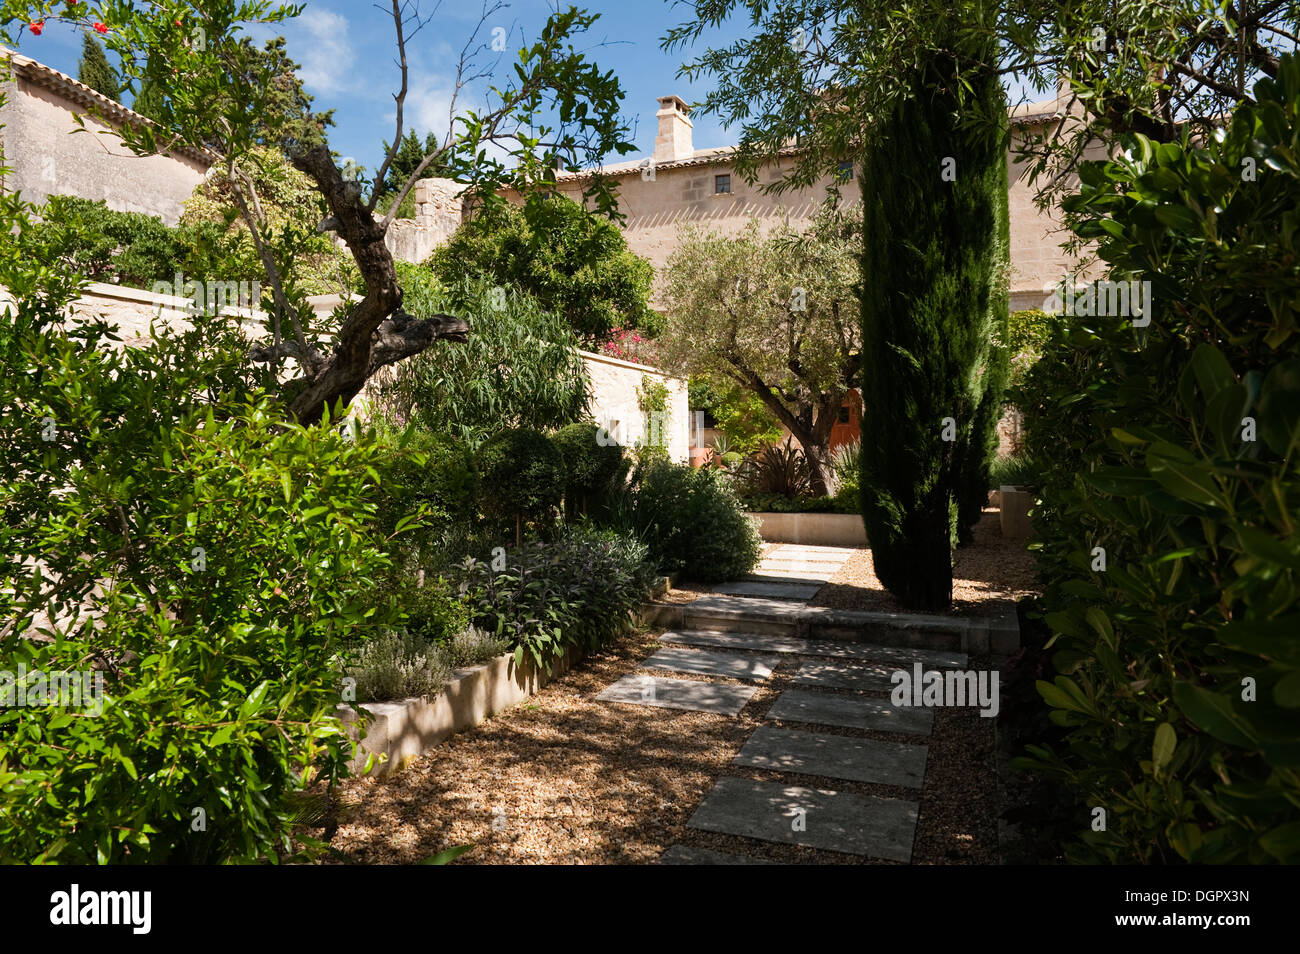 Vorgarten mit Stein und Kies Oberfläche führt zum Eingang von einem provenzalischen Haus Stockfoto